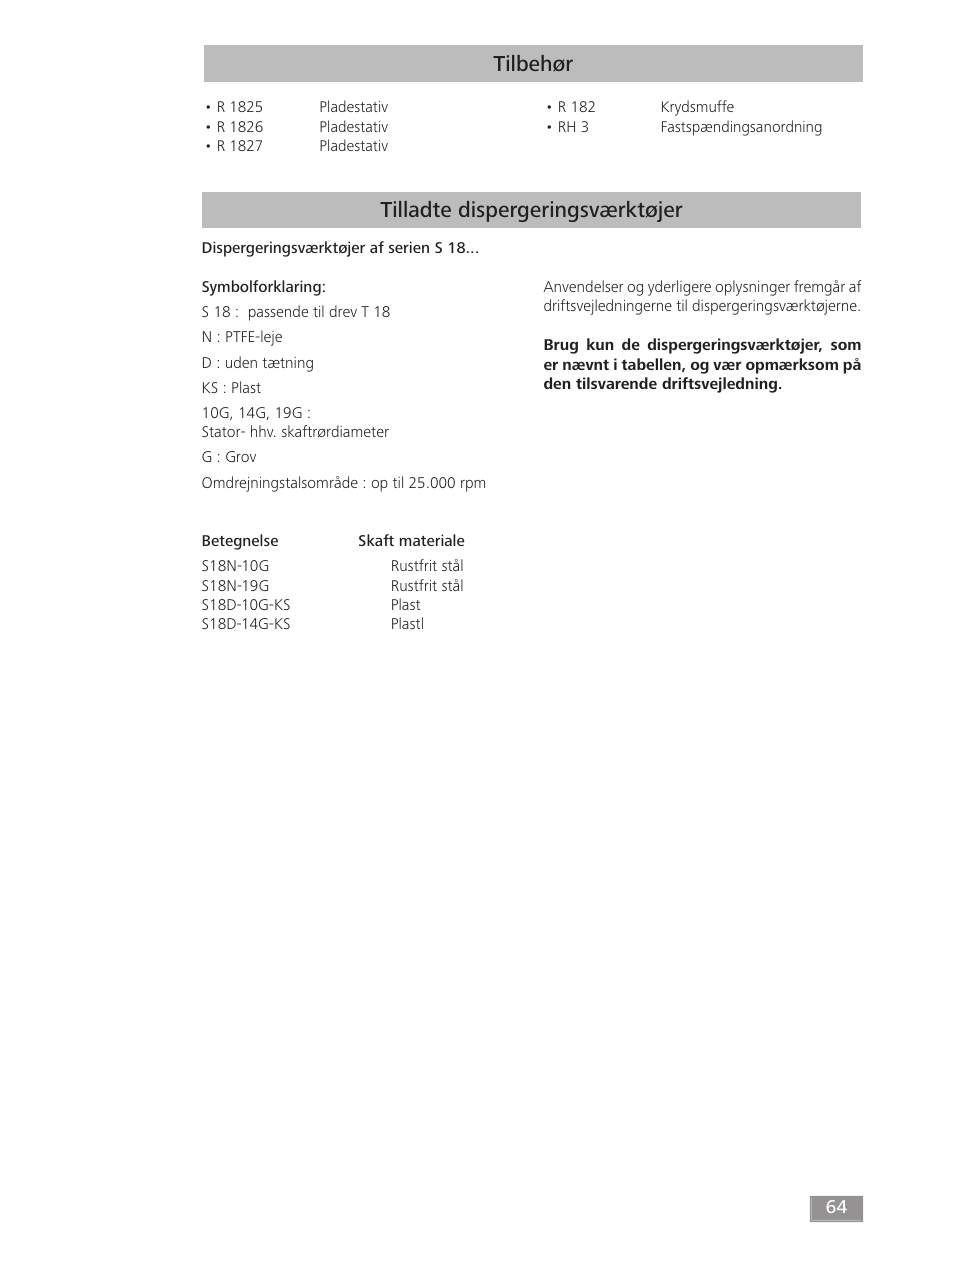 Tilbehør tilladte dispergeringsværktøjer | IKA T 18 digital ULTRA-TURRAX User Manual | Page 64 / 188